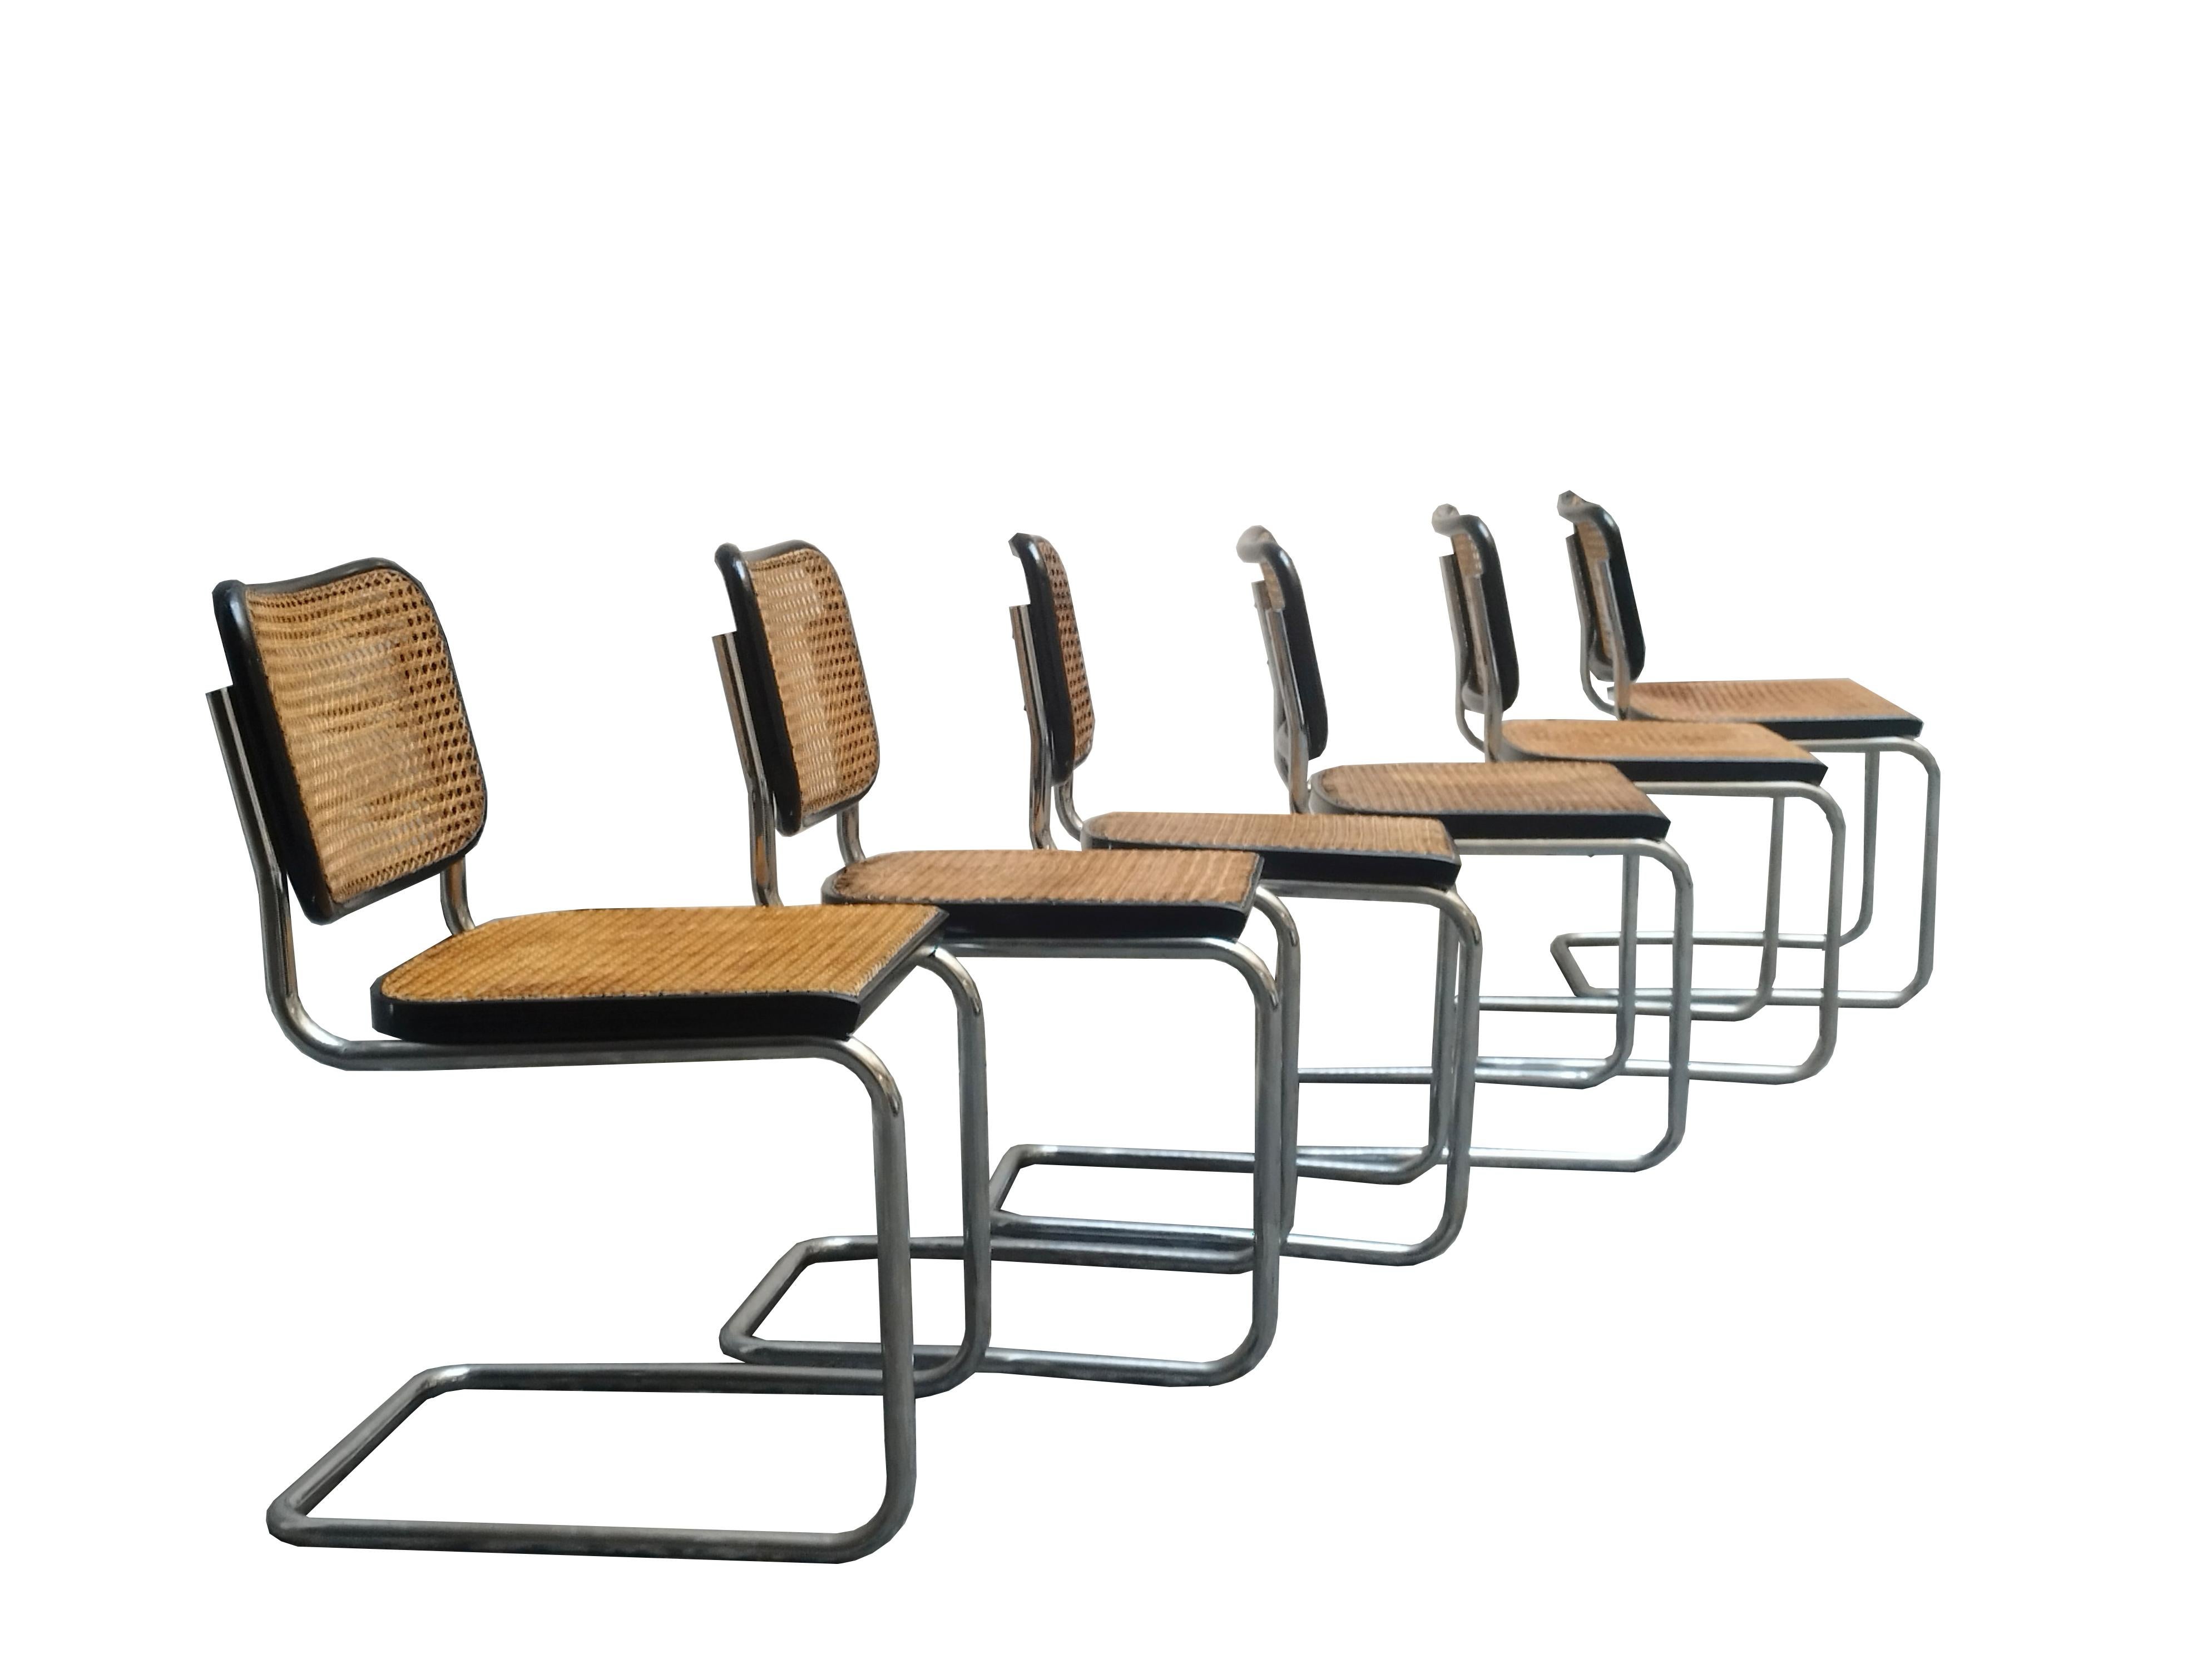 Satz von 6 Cesca-Stühlen, entworfen von Marcel Breuer, hergestellt von Gavina im Jahr 1960.
Die Stühle weisen leichte Gebrauchsspuren auf, die Sitze sind original Wiener Stroh.
Die Verbindung von Wiener Stroh und Metallrohr, von Tradition und